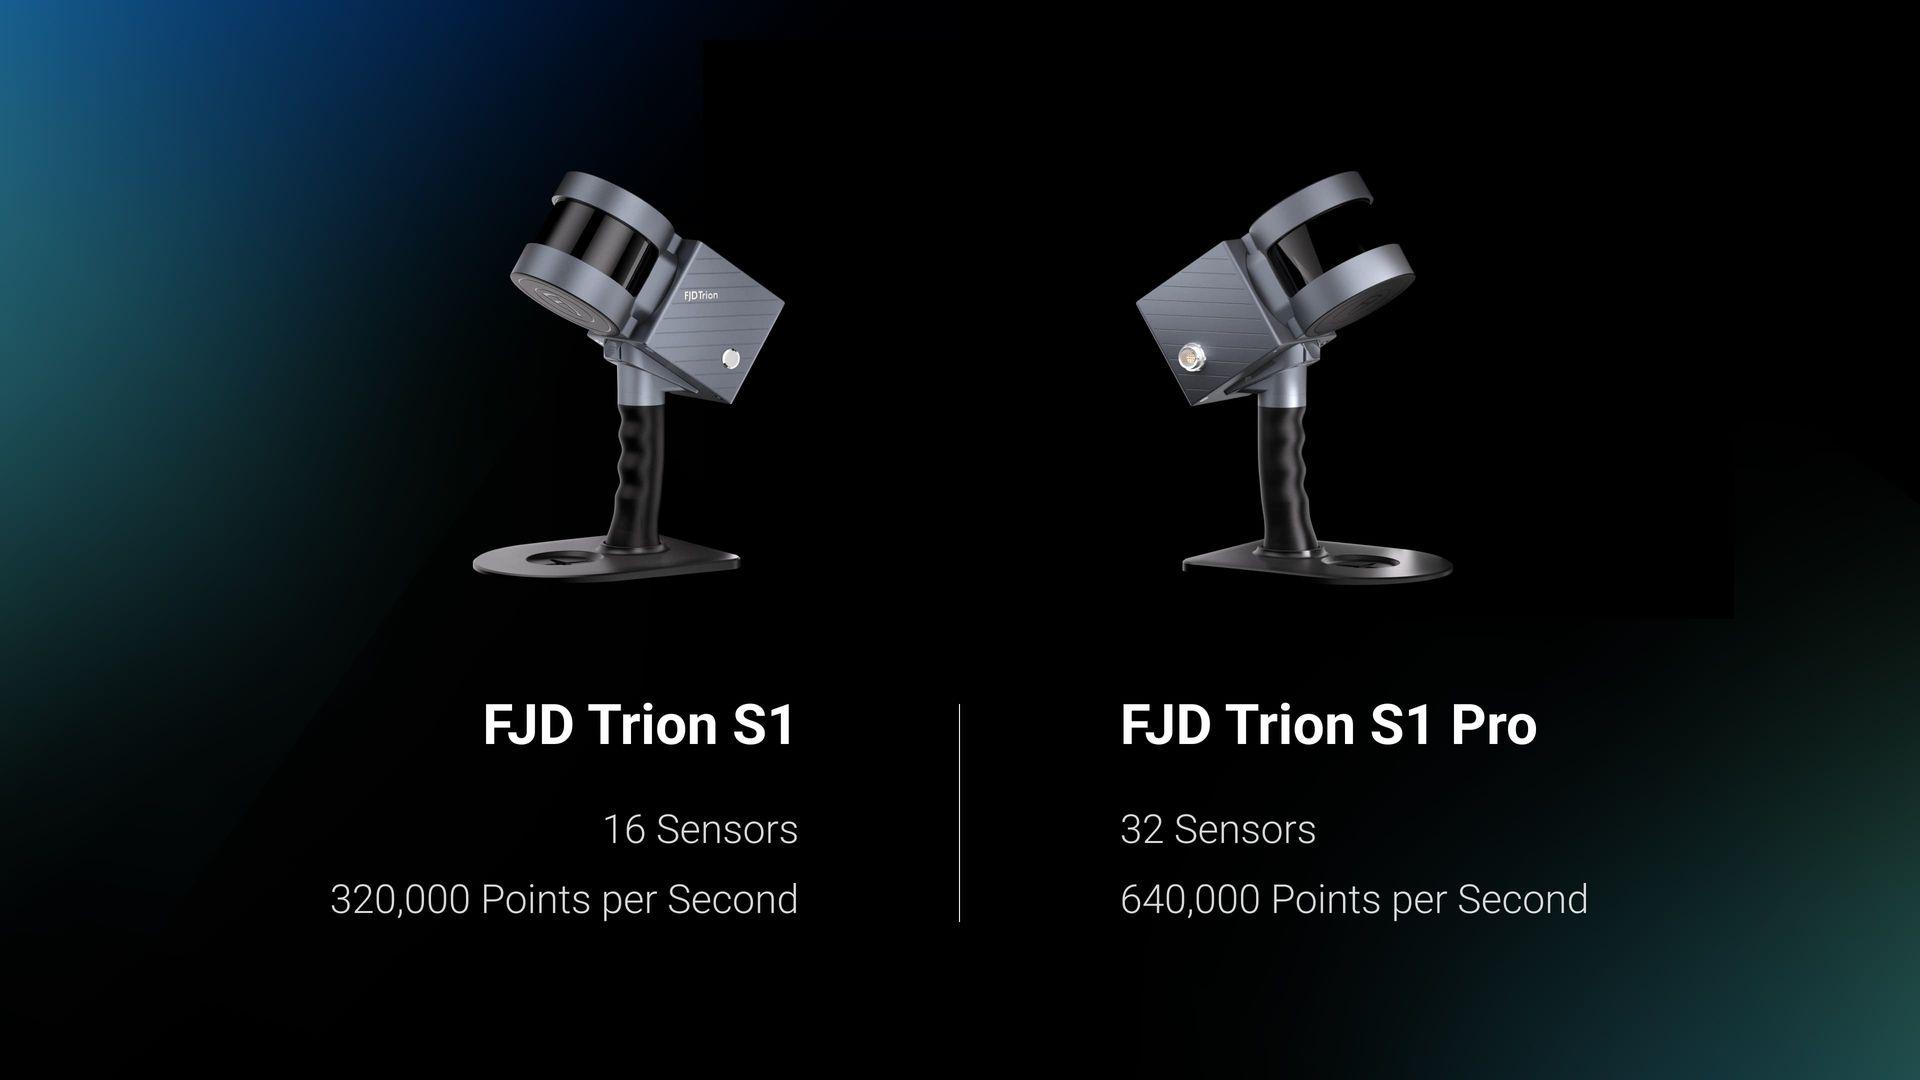 Расширьте свои возможности сканирования с помощью FJD Trion S1 Pro, усовершенствованной версии S1. Опираясь на облегченный вес и портативность, S1 Pro обеспечивает еще большую точность и эффективность благодаря обновленному оборудованию.